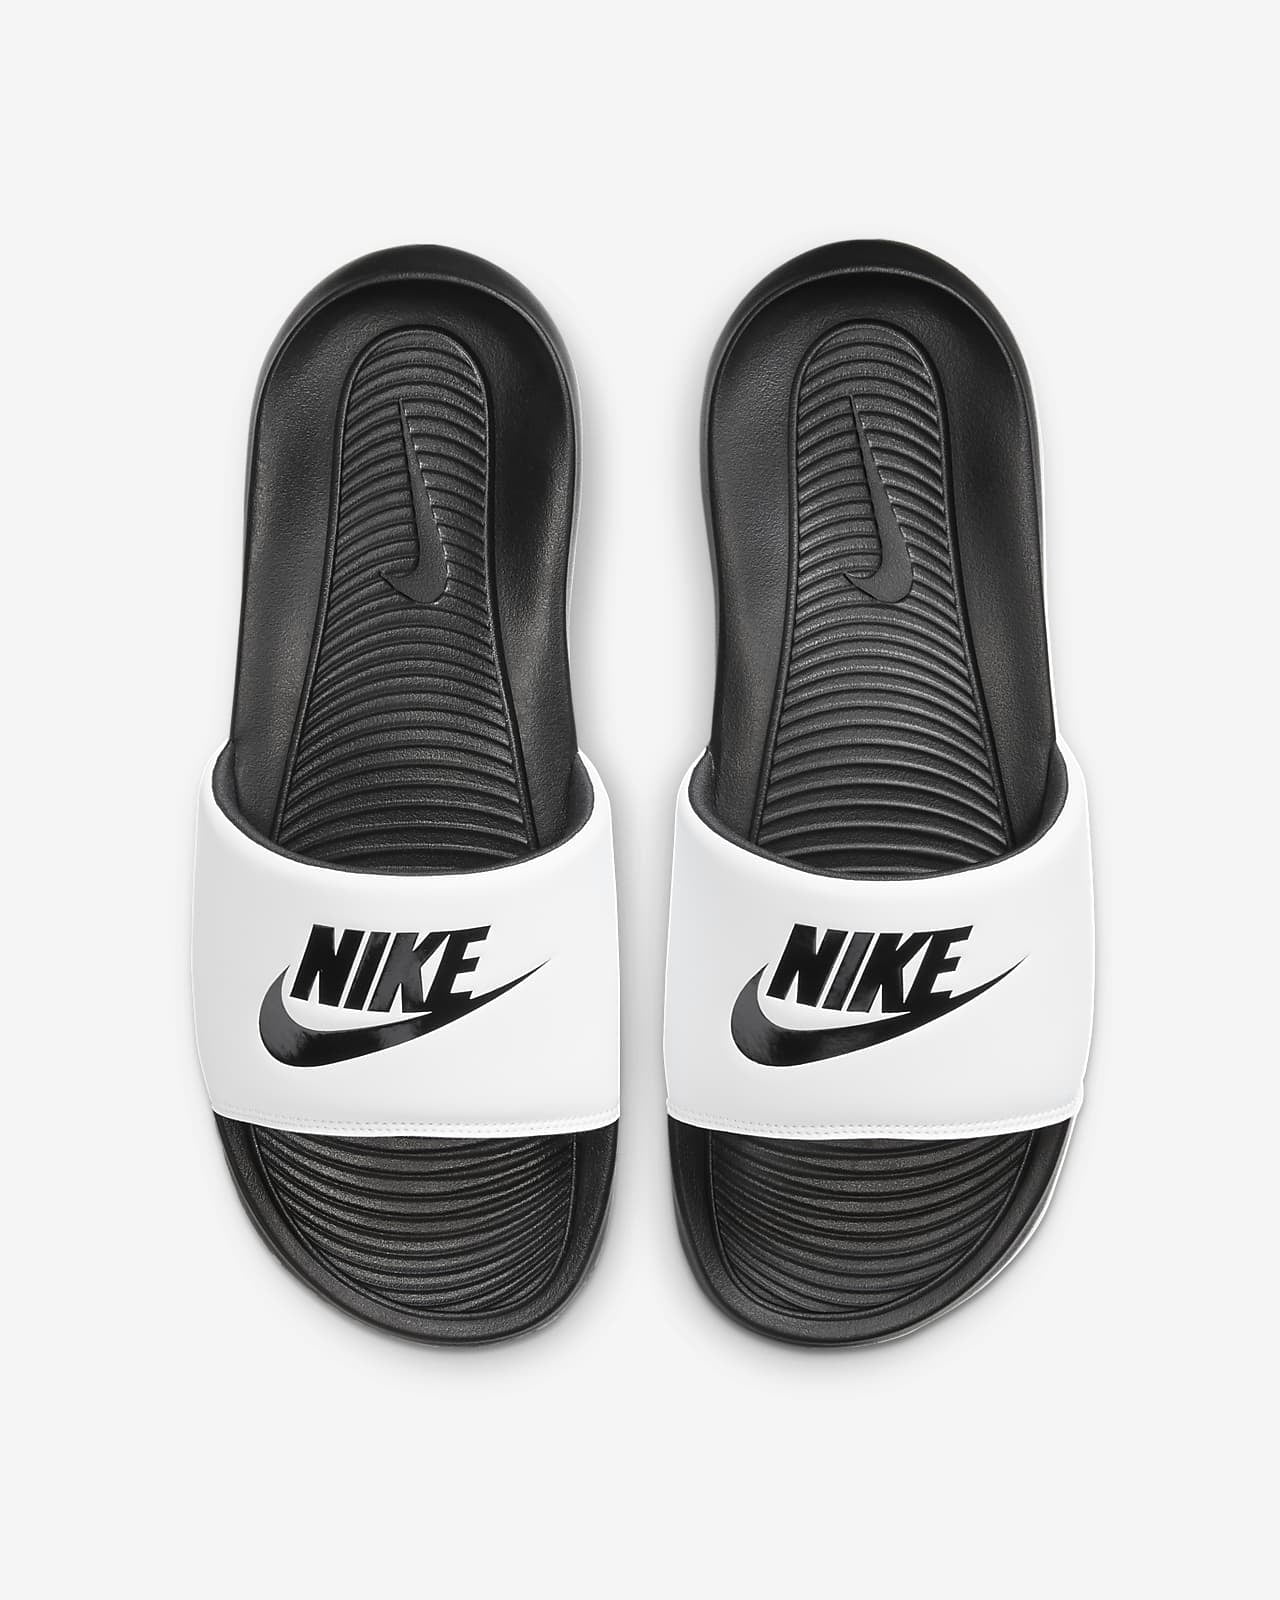 Smeltend Bisschop Roos Nike Victori One Slide White Black CN9675 005 Men's Size 9 (10 Wmn's) -  Walmart.com